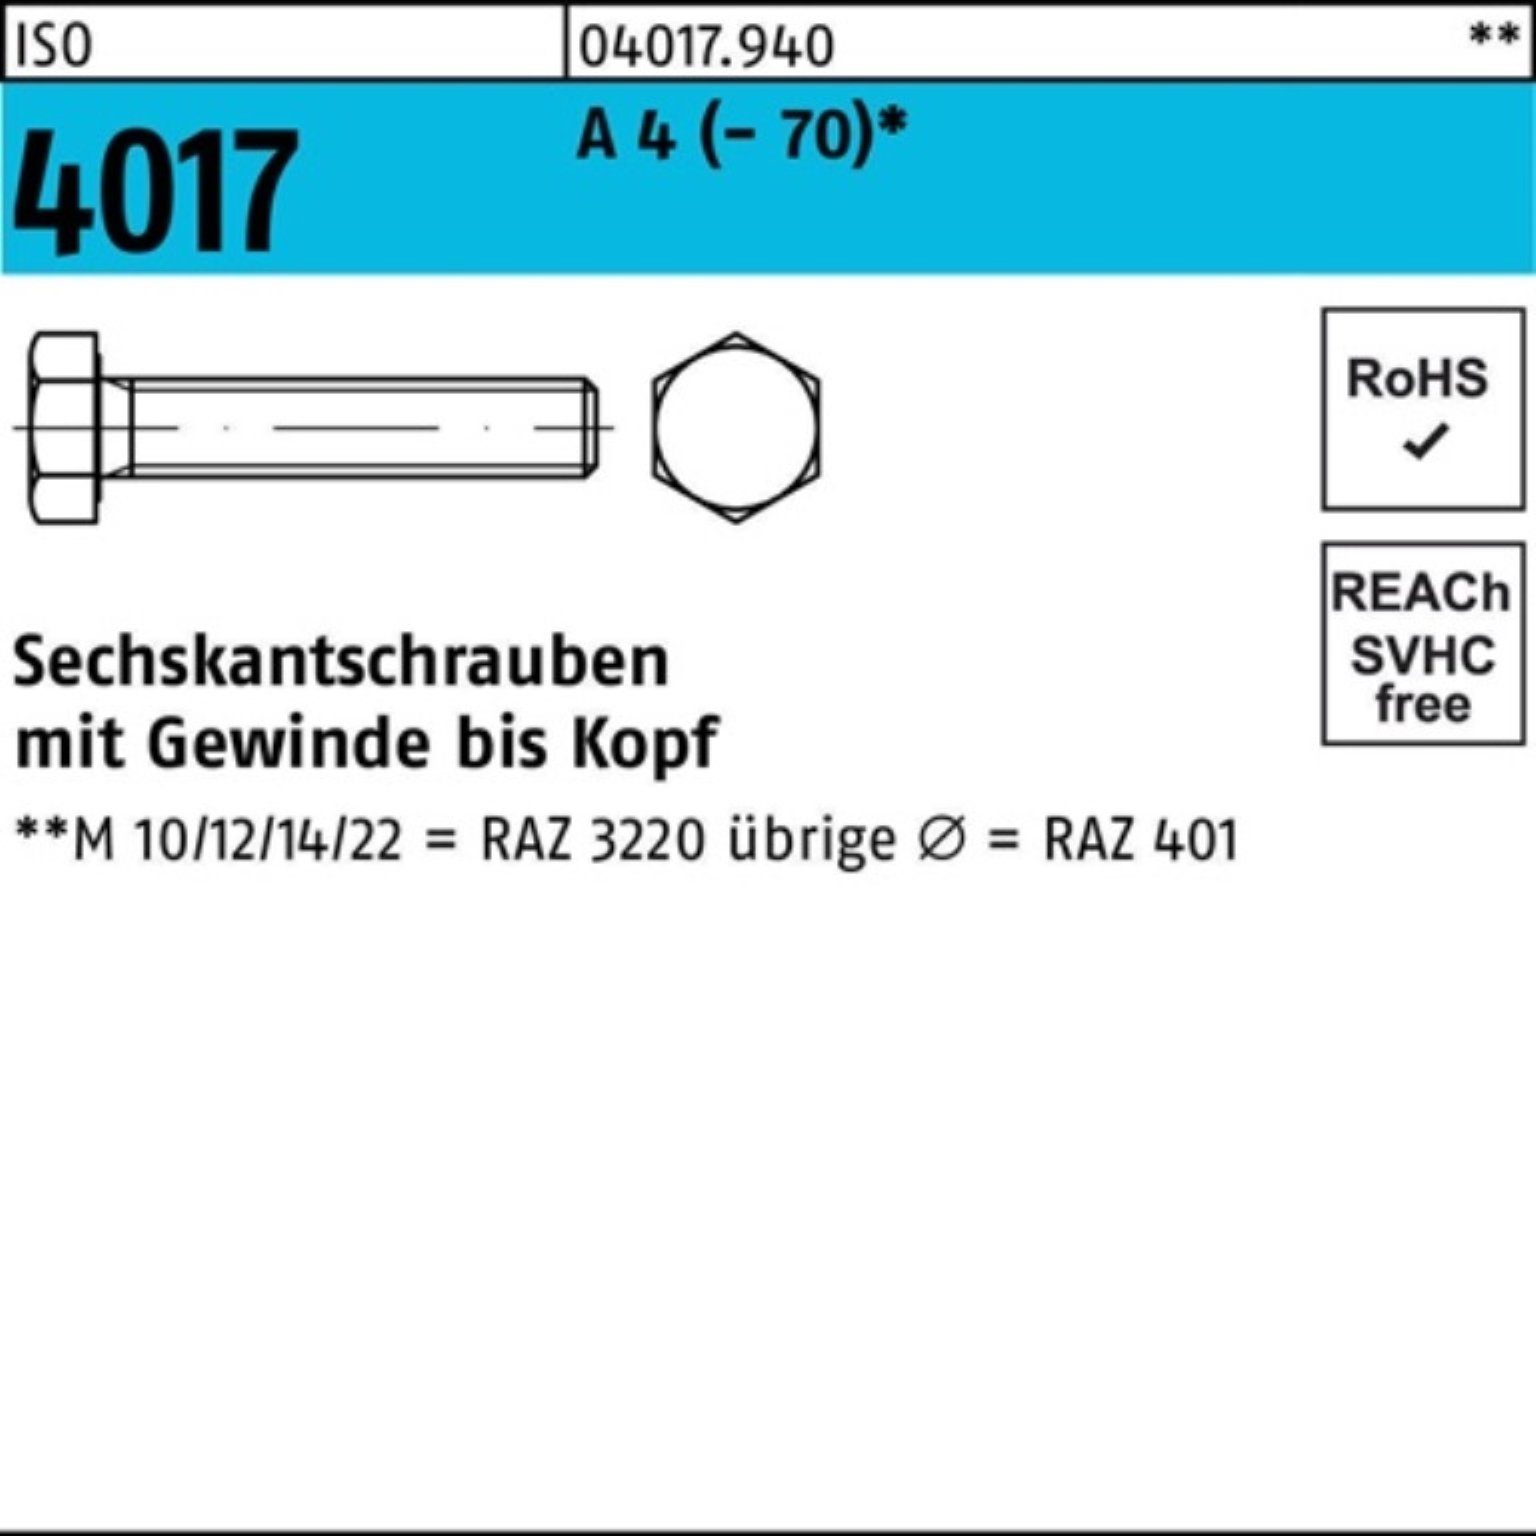 Bufab Sechskantschraube 100er Pack Sechskantschraube ISO 4017 VG M18x 100 A 4 (70) 1 Stück